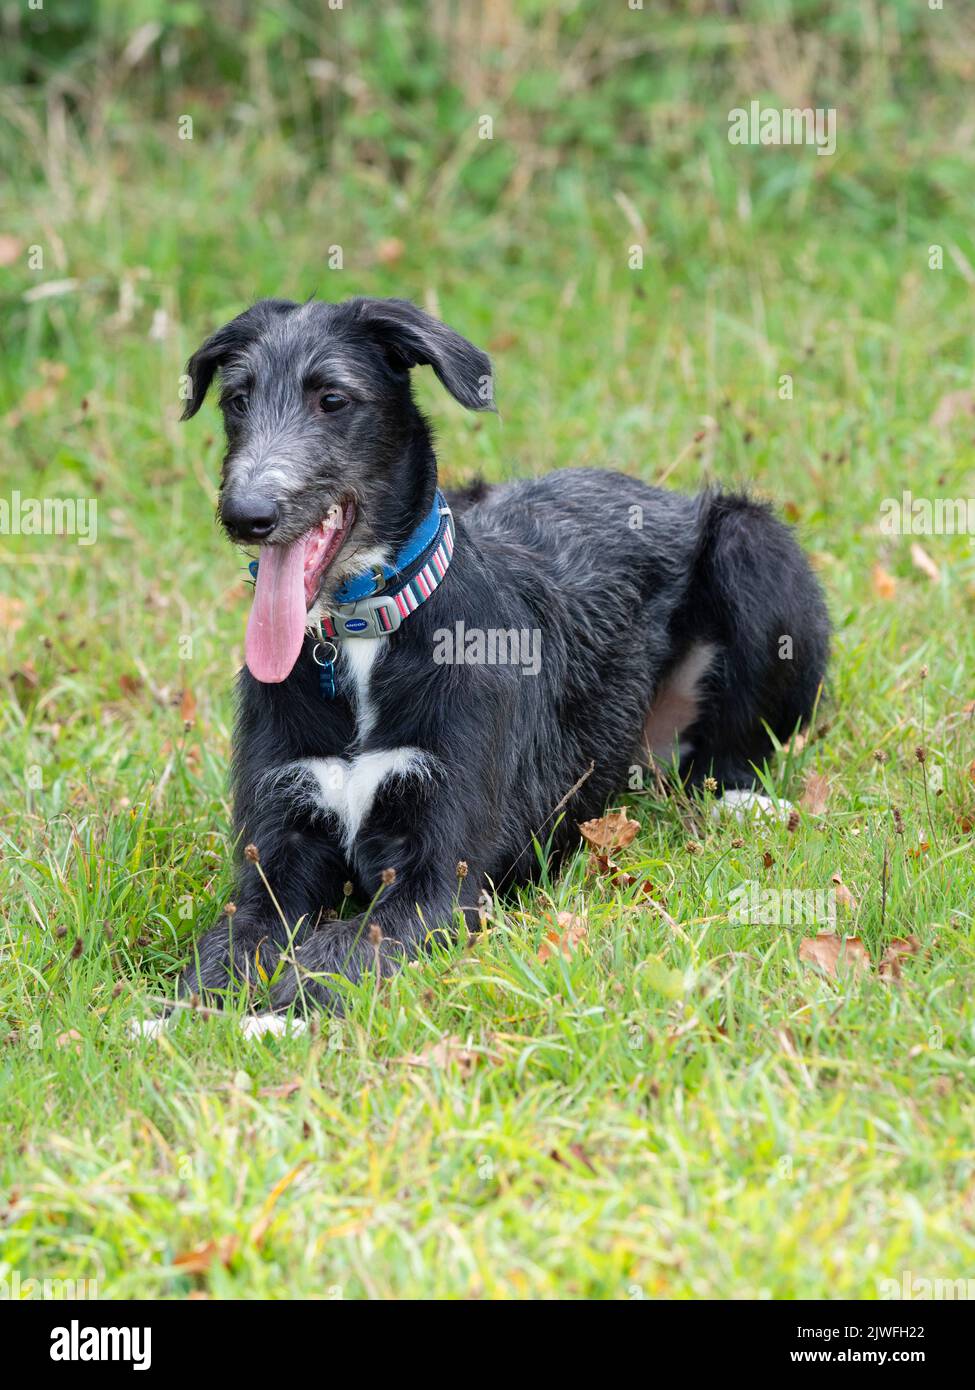 un chien de chasse noir et gris de 18 semaines, un chien de chasse, un chien de compagnie, se reposant dans un champ herbacé Banque D'Images